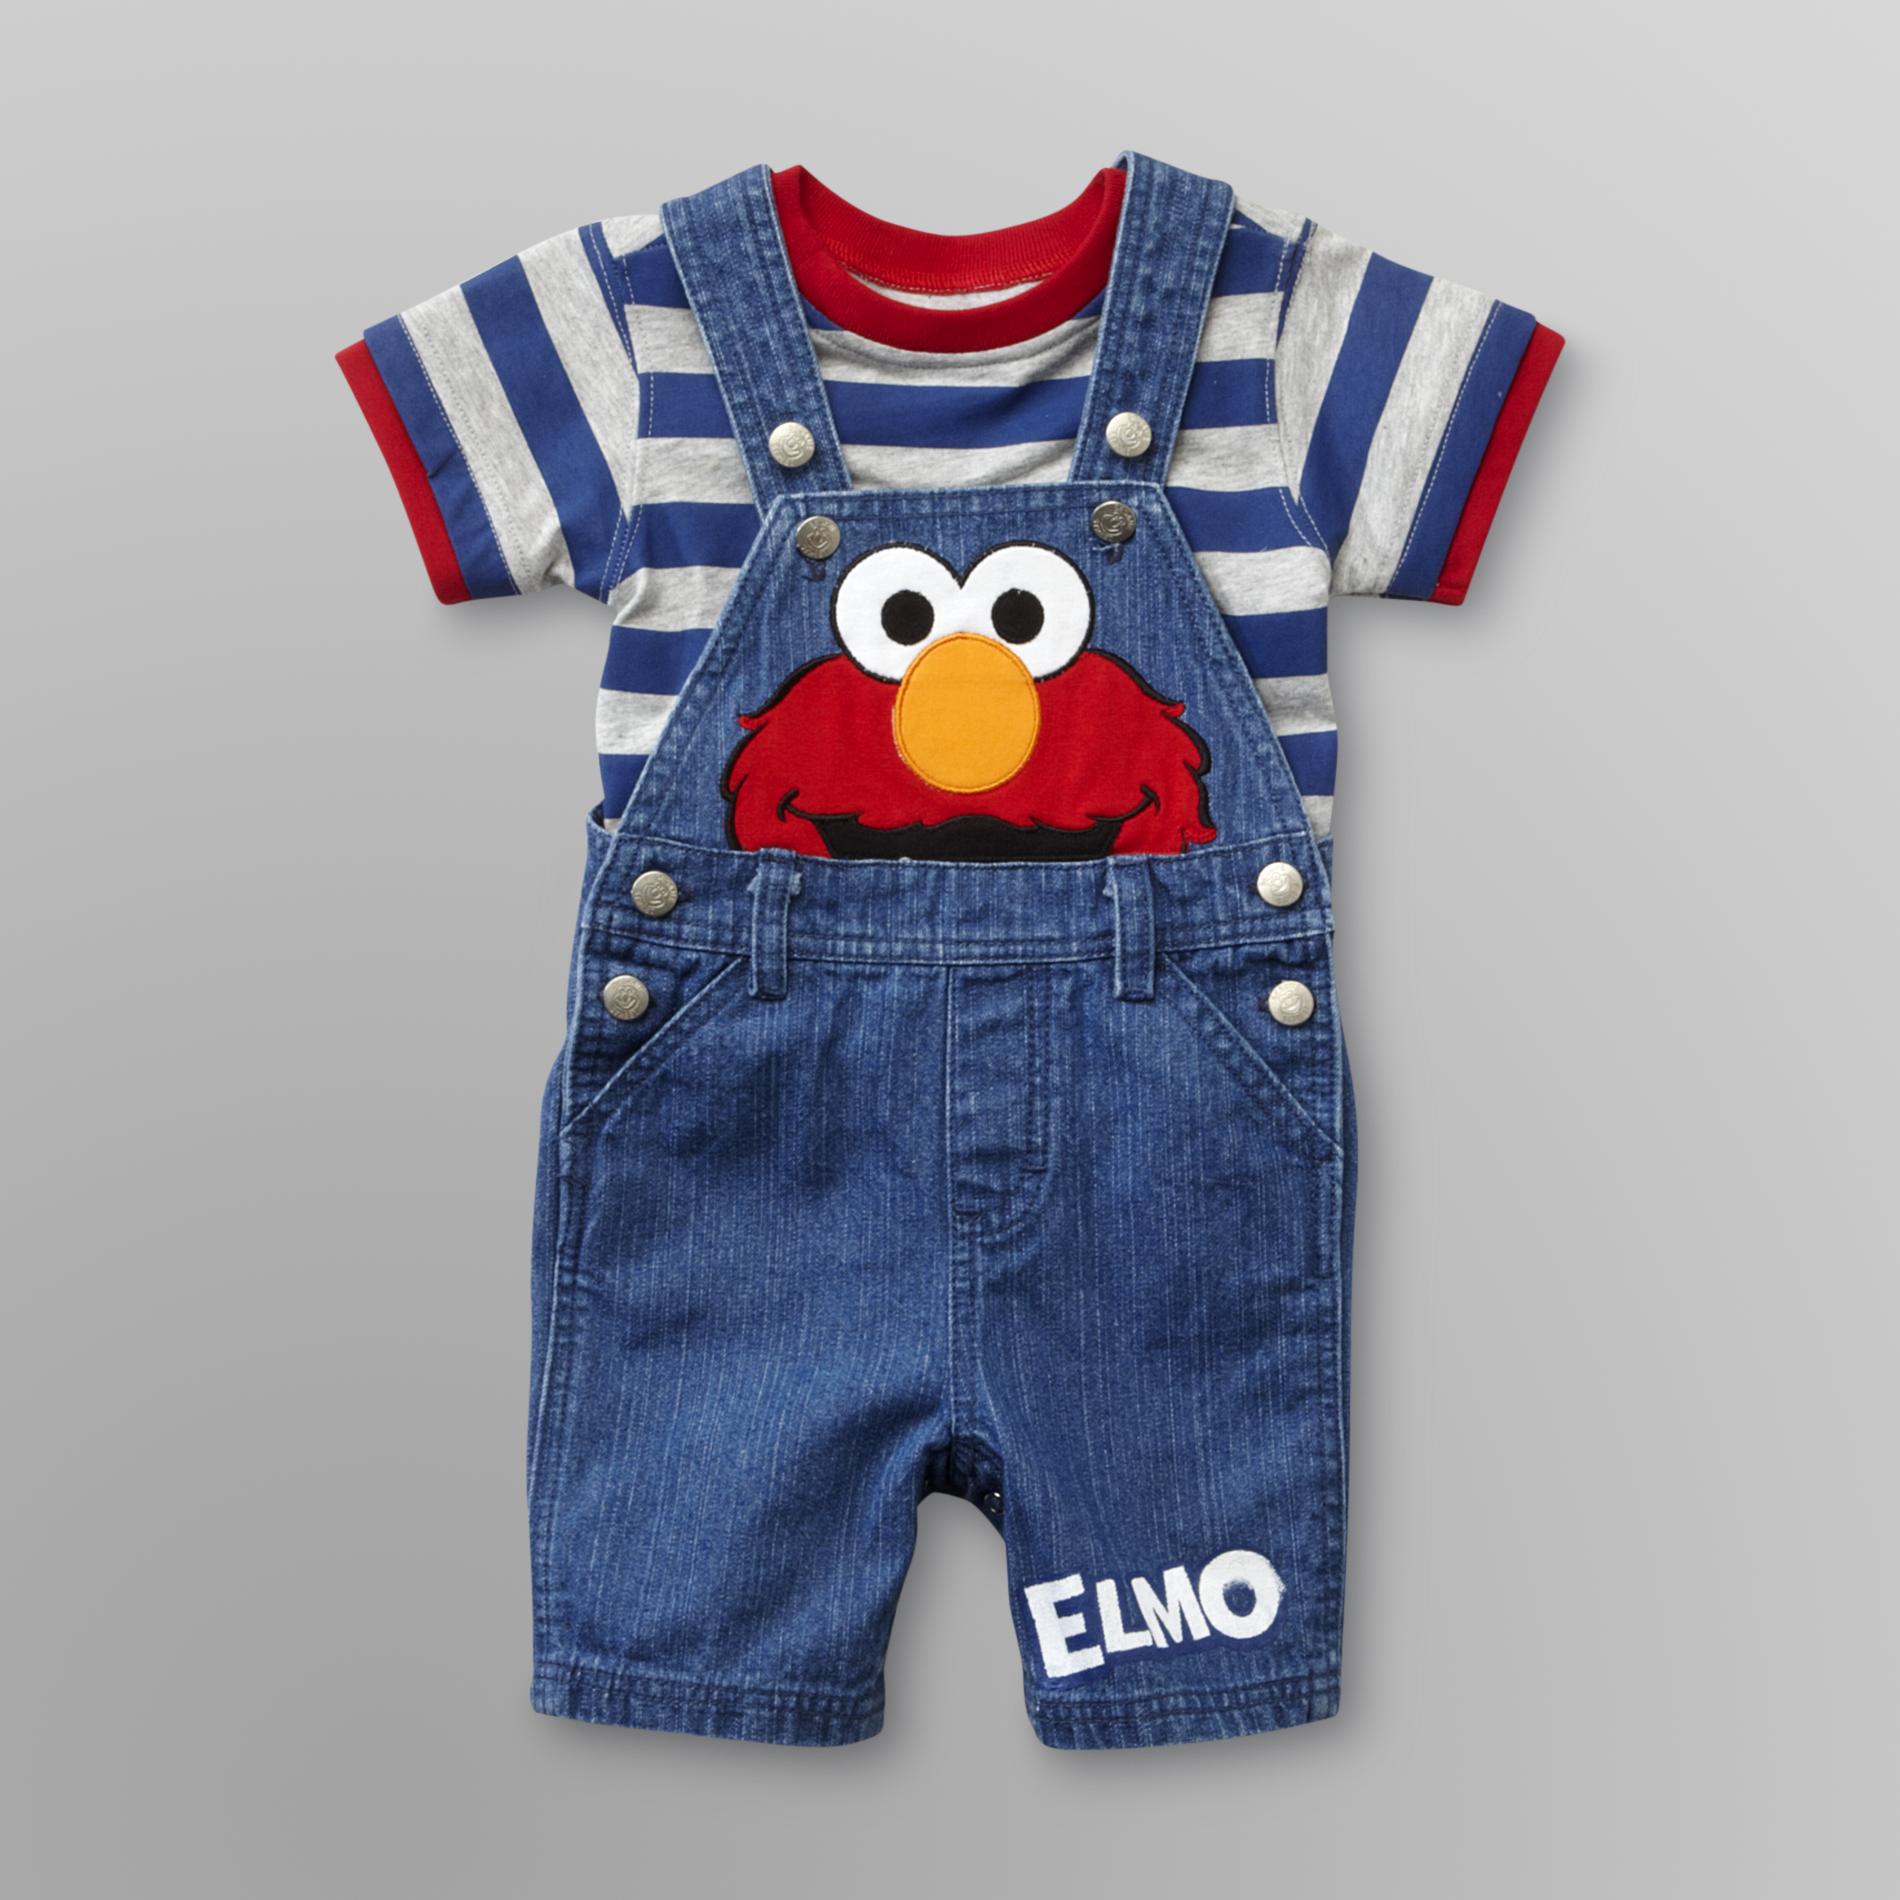 Sesame Street Elmo Infant Boy's Overalls Short Set